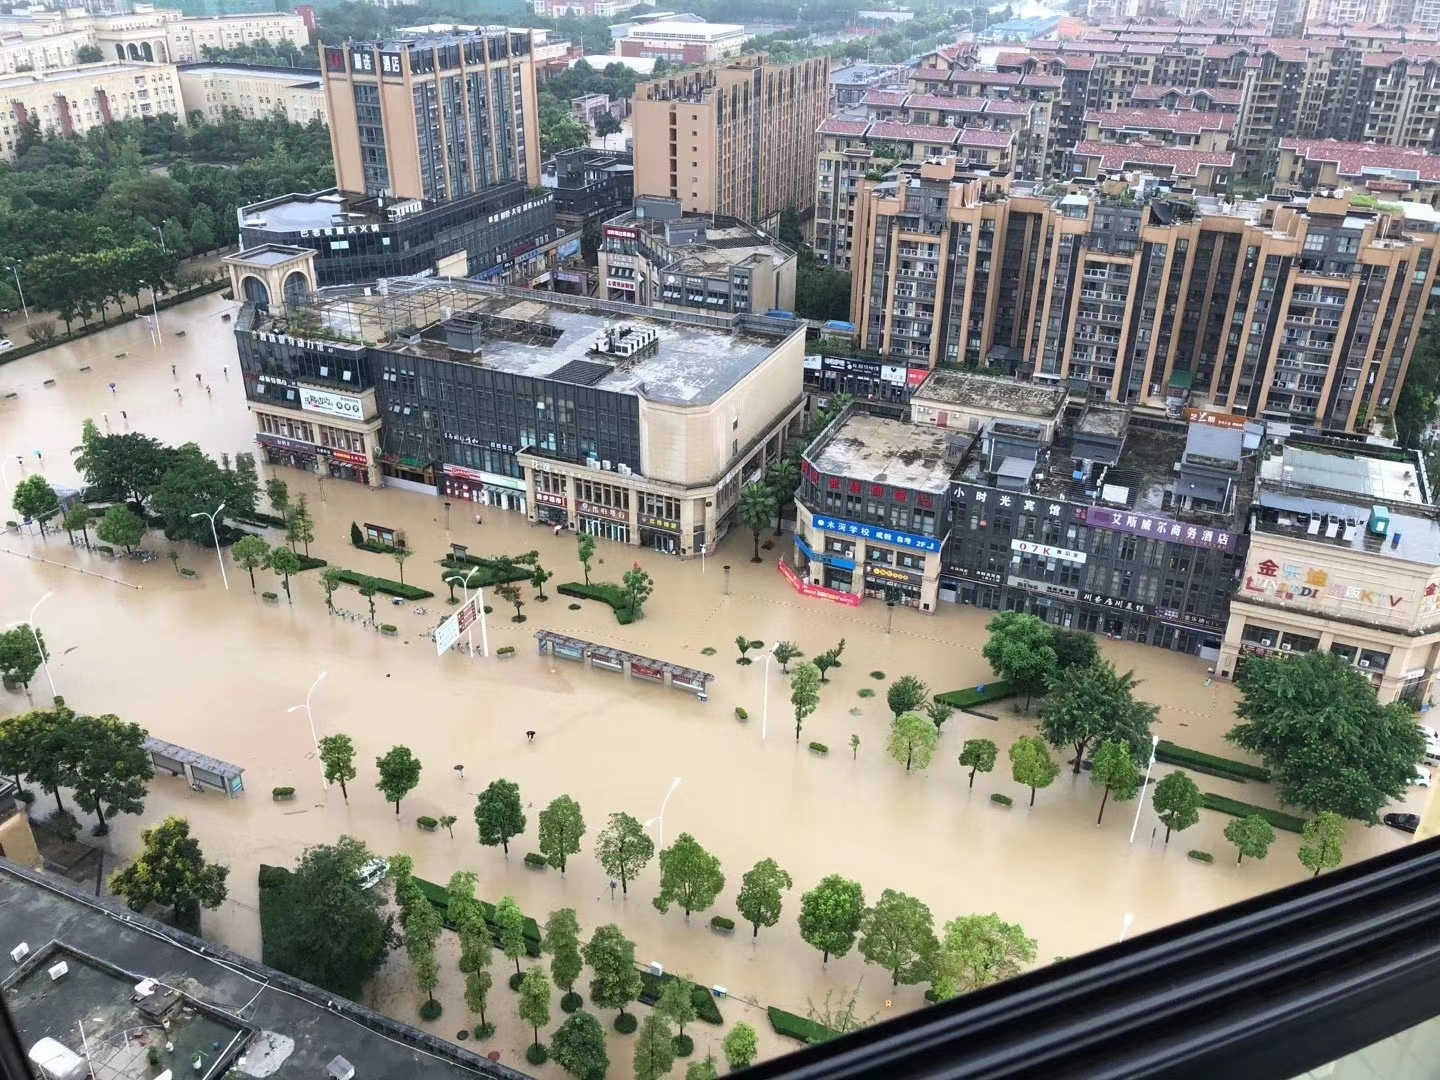 黄河正式走进今年汛期 进入超标洪水防御状态-大河新闻